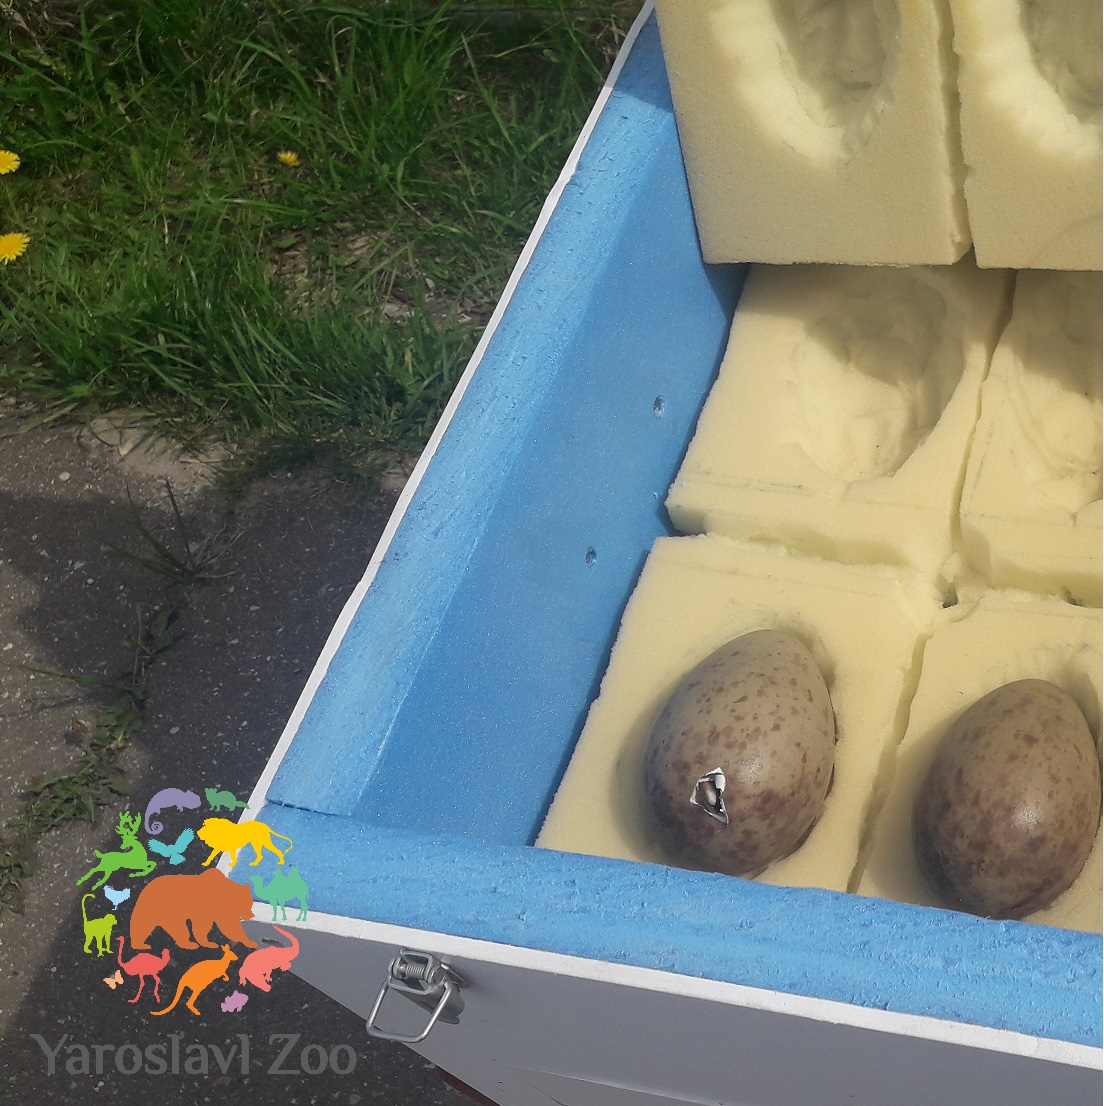 Ярославский зоопарк передал яйца редких птиц Окскому государственному заповеднику